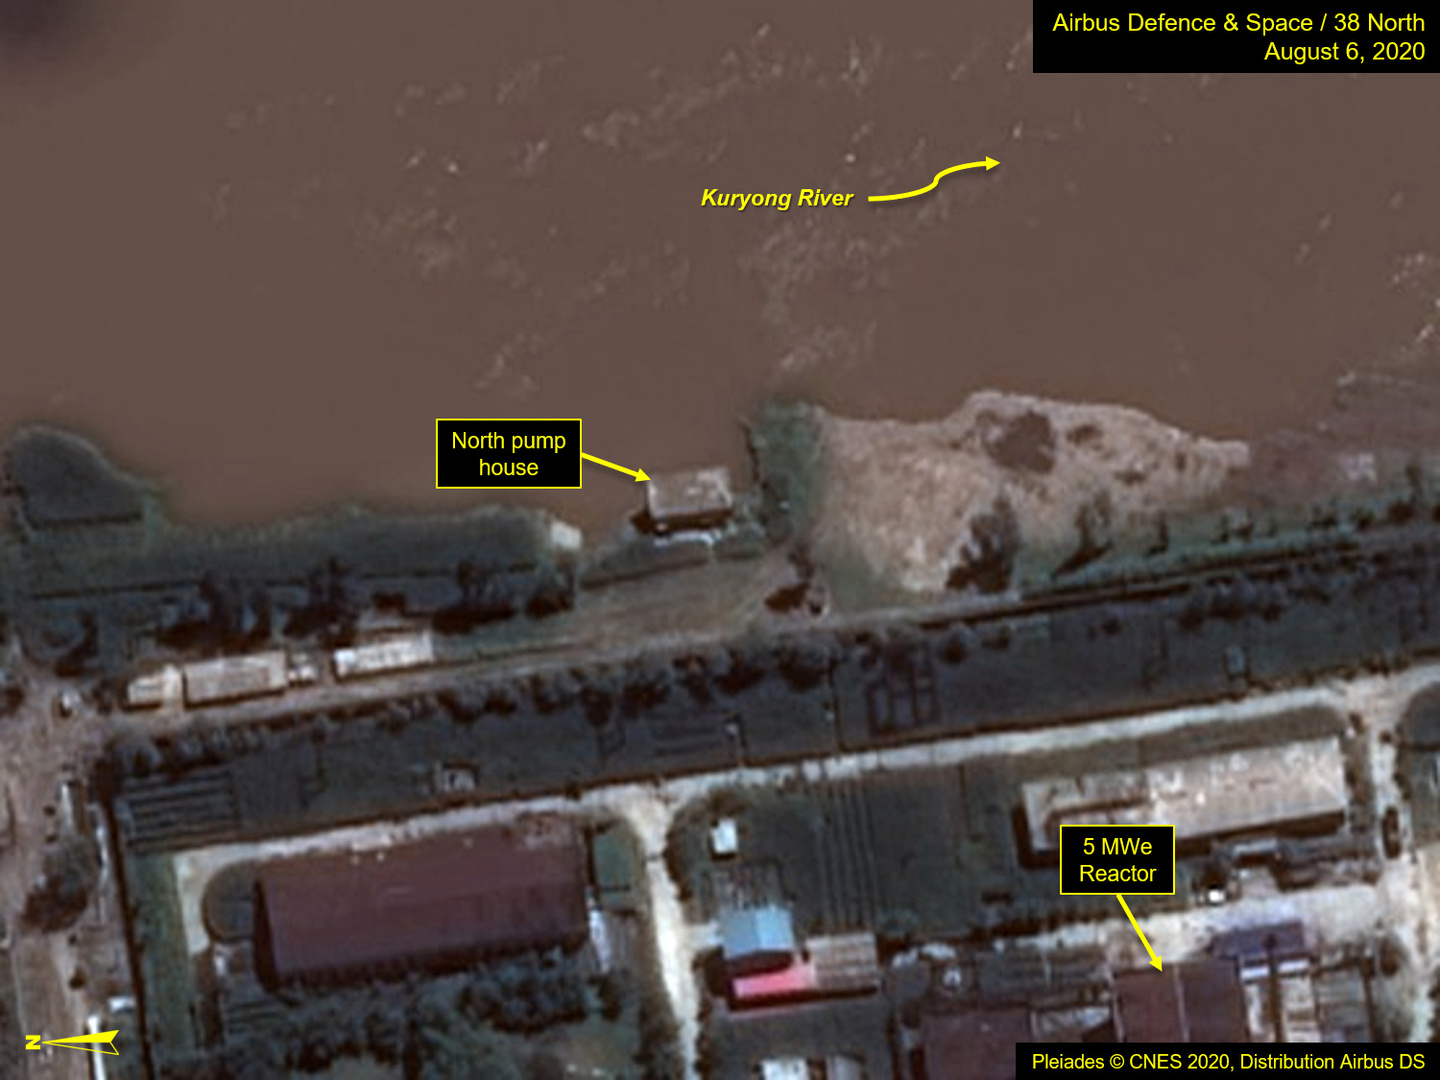 بالصور.. أقمار اصطناعية تكشف تضرر الموقع النووي الرئيس في كوريا الشمالية